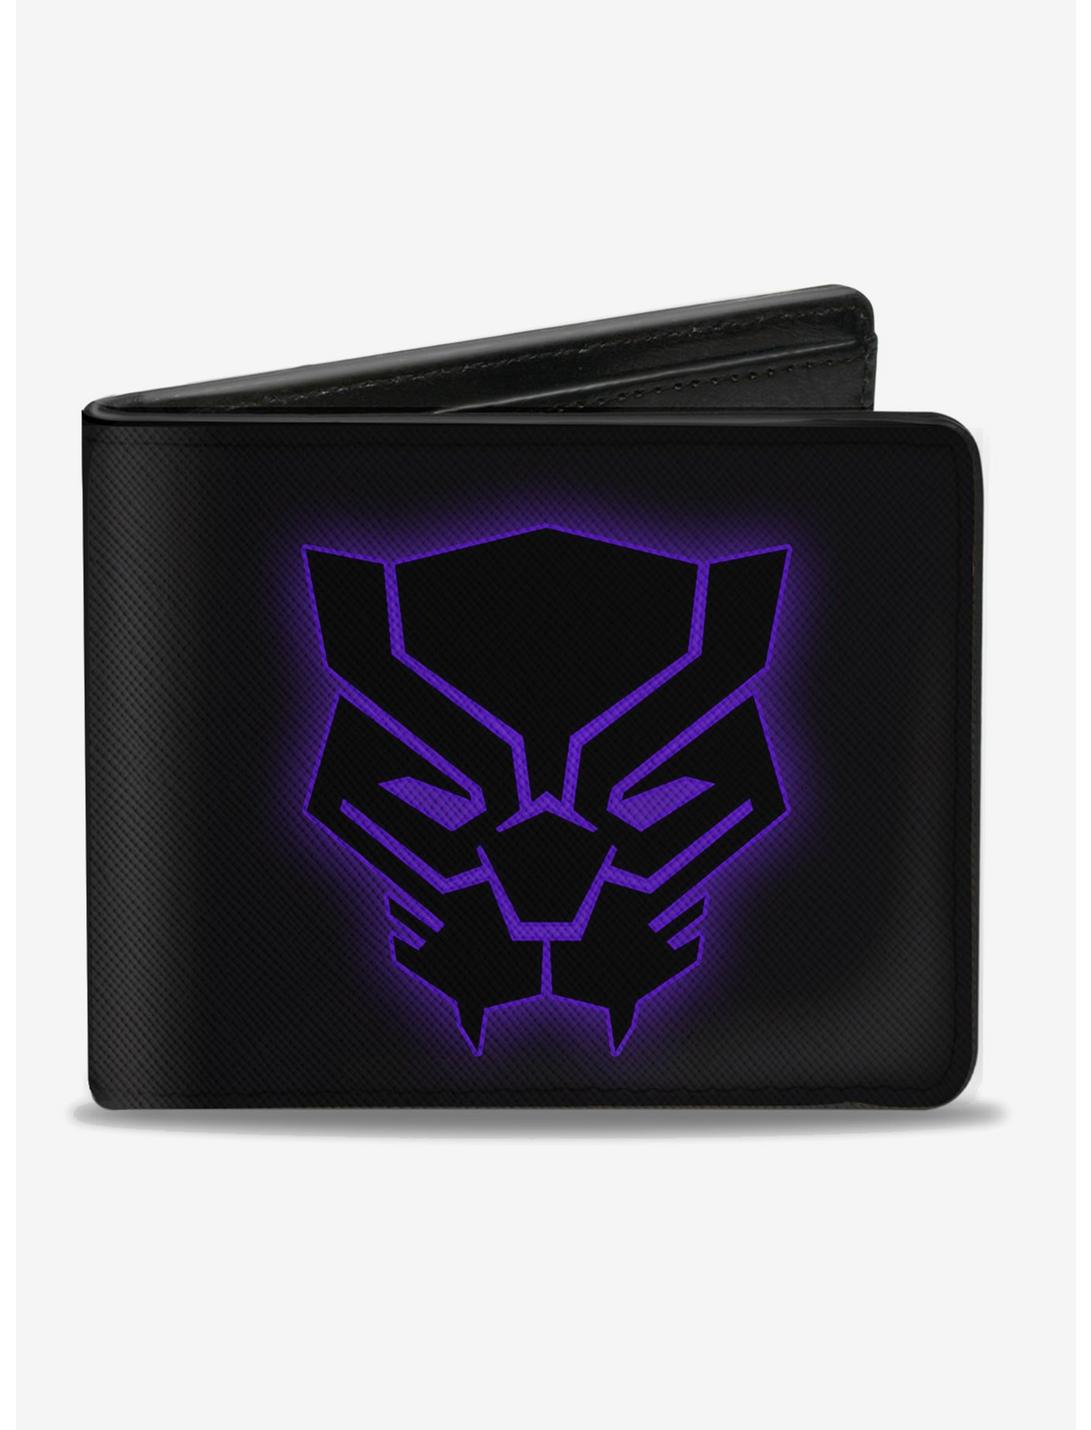 Black Panther Metal Badge Distressed Marvel Comics Gift Box Bifold Wallet 